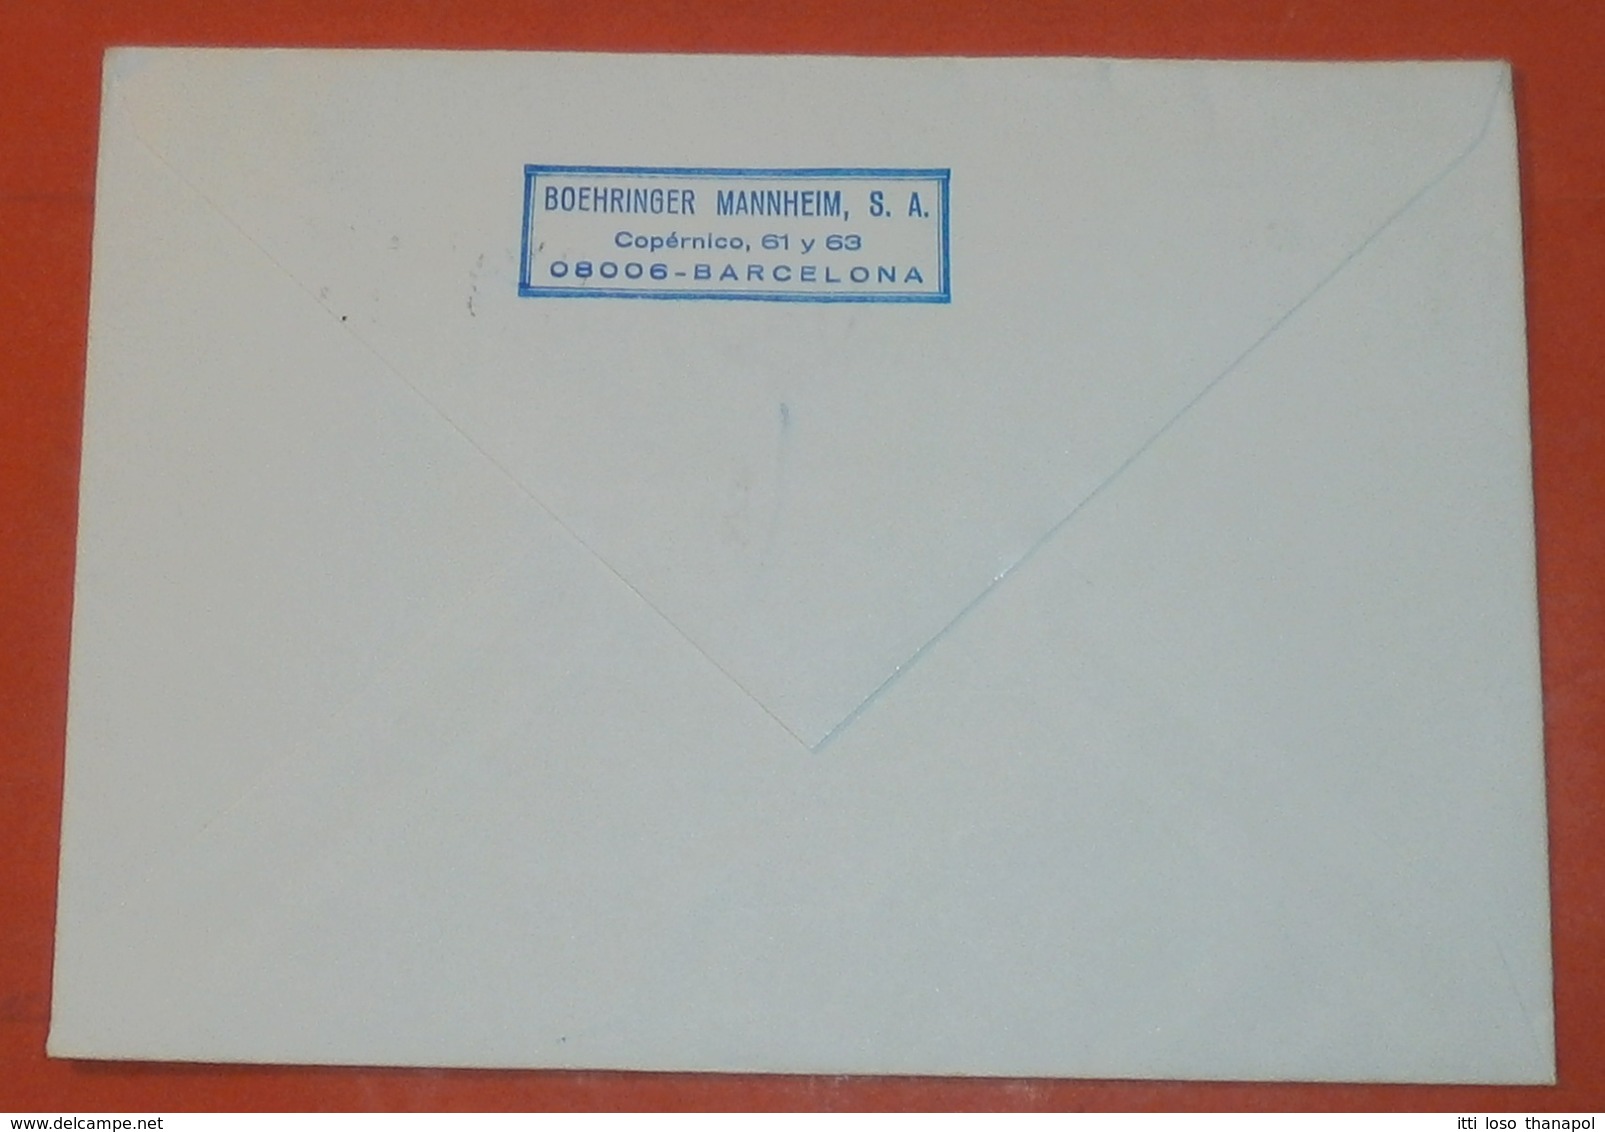 SPANIEN 2703 Weihnachten -- Barcelona 20.12.1985 -- Boehninger Mannheim S.A. -- Brief Cover (2 Foto)(37836) - Briefe U. Dokumente